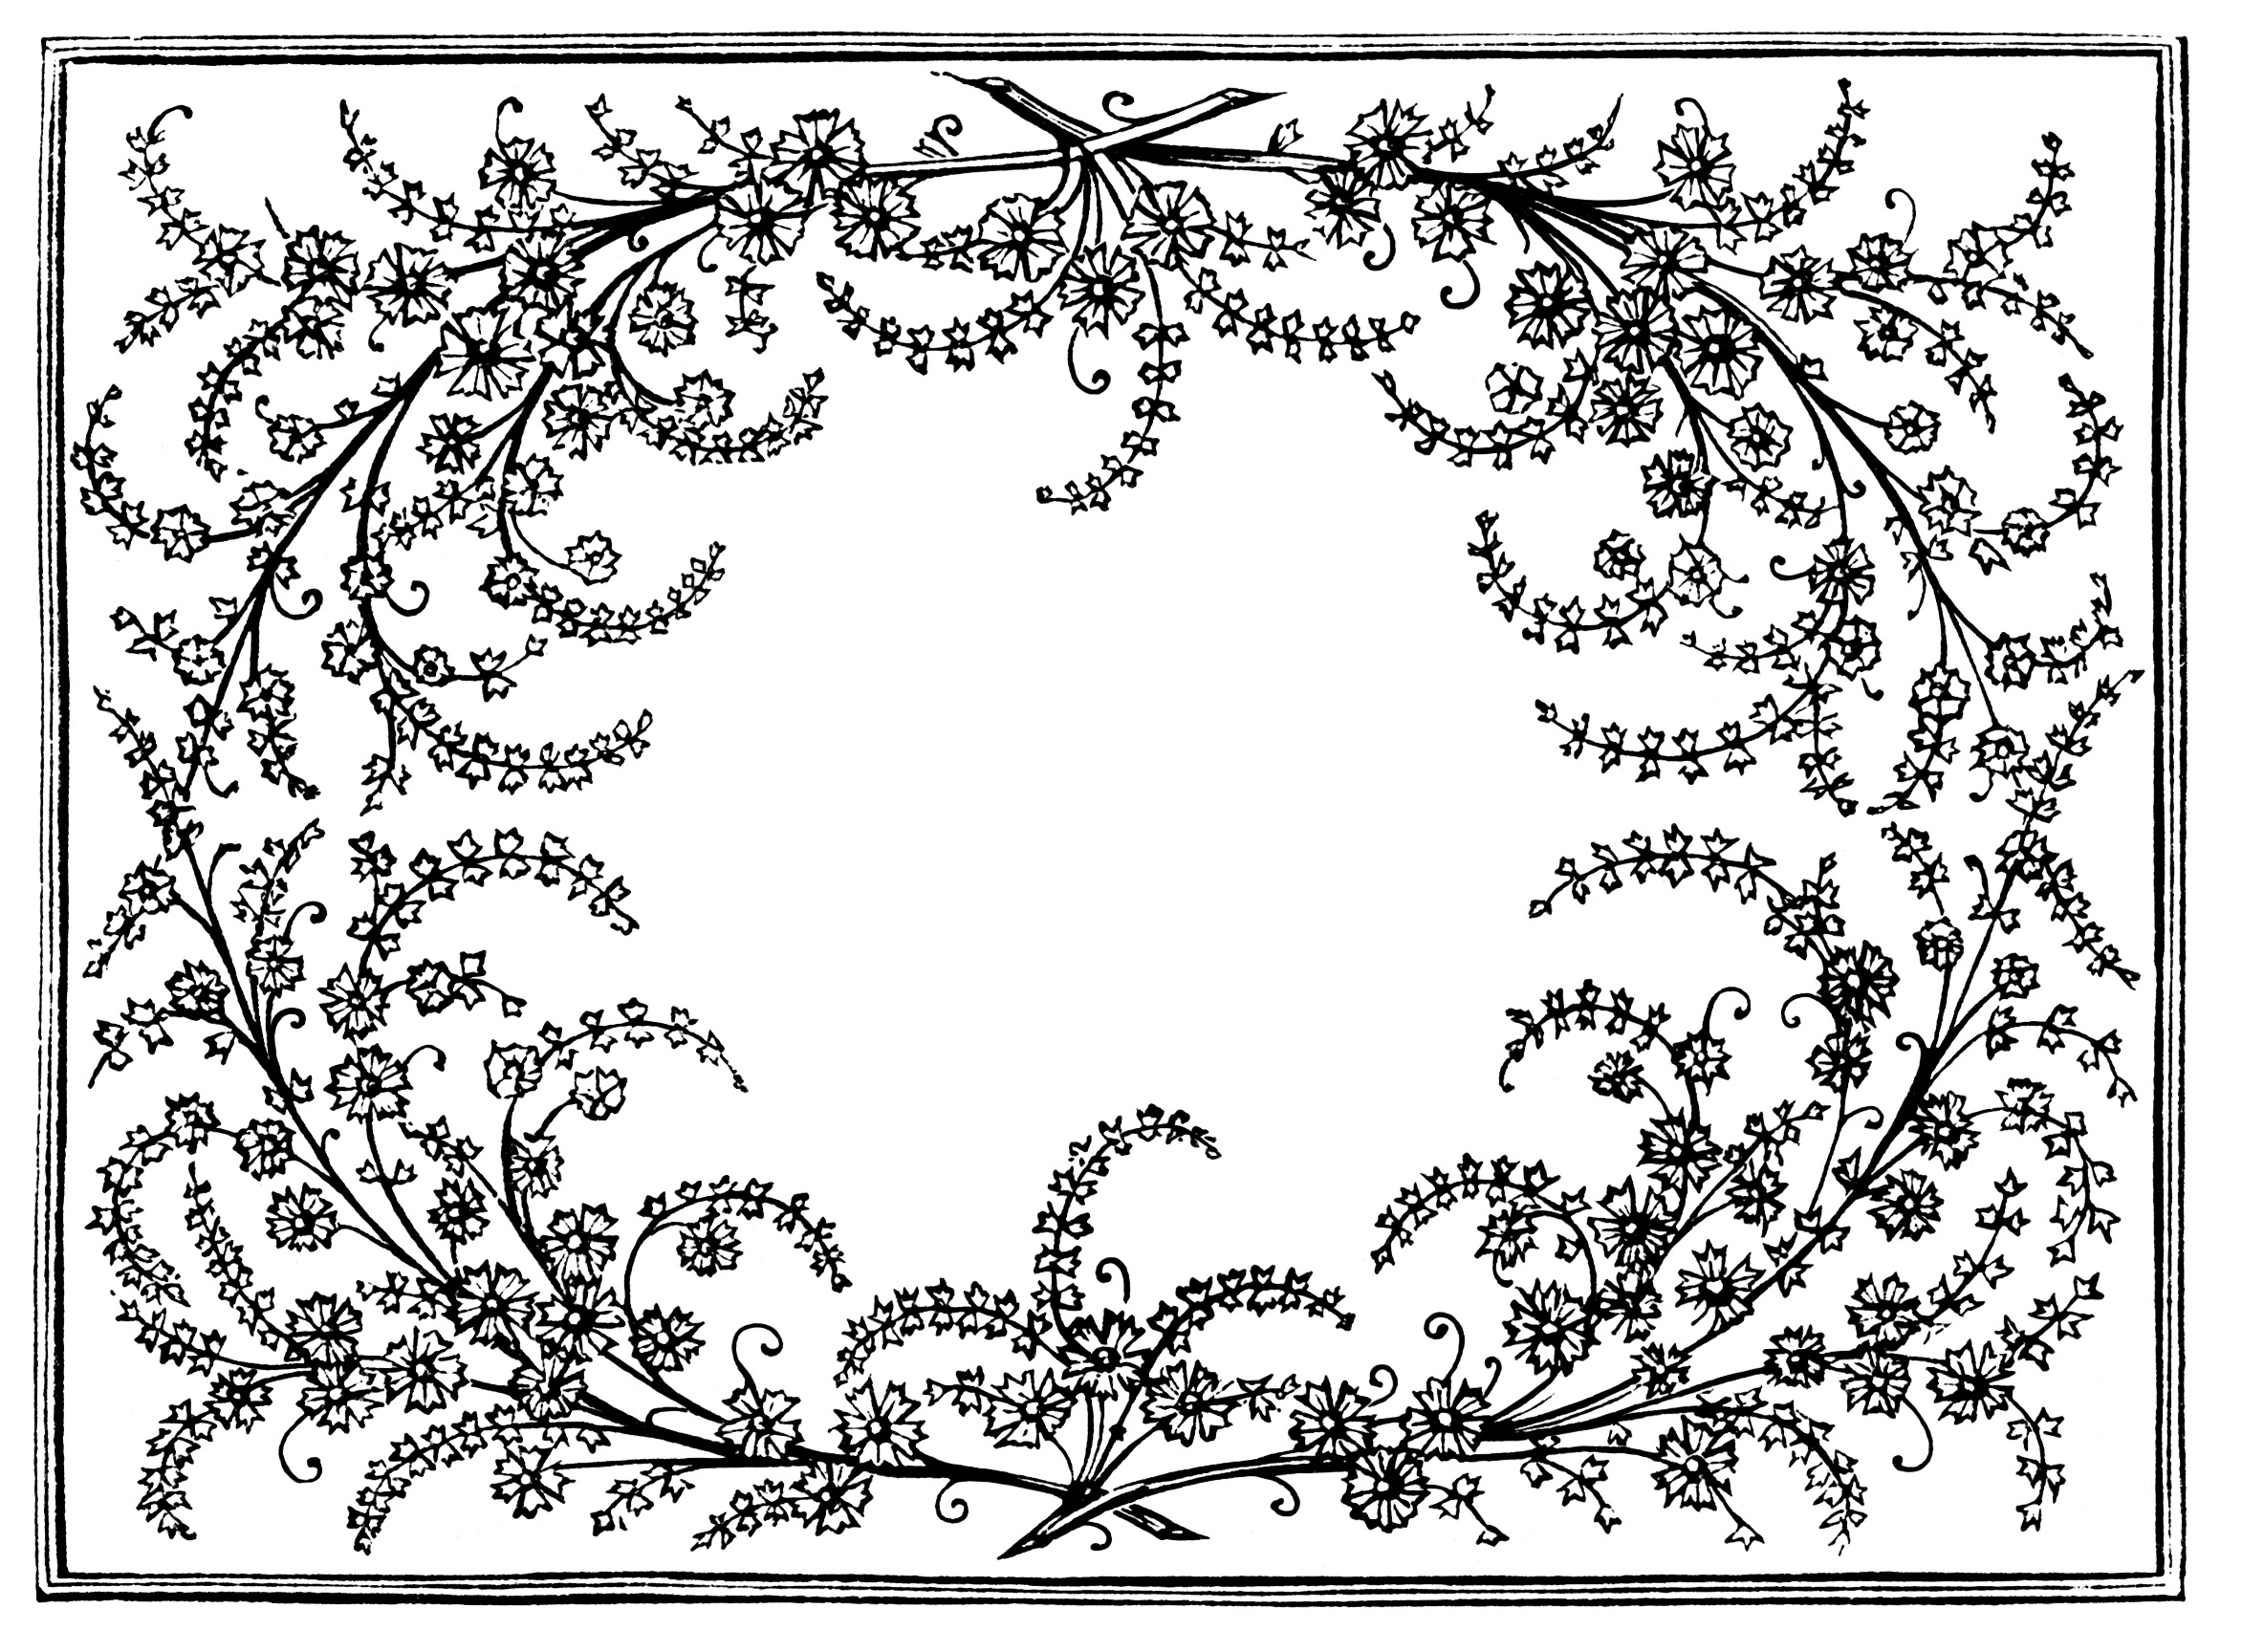 frame clip art, black and white graphics, vintage flowers leaves design, ornamental swirl frame, vintage floral illustration